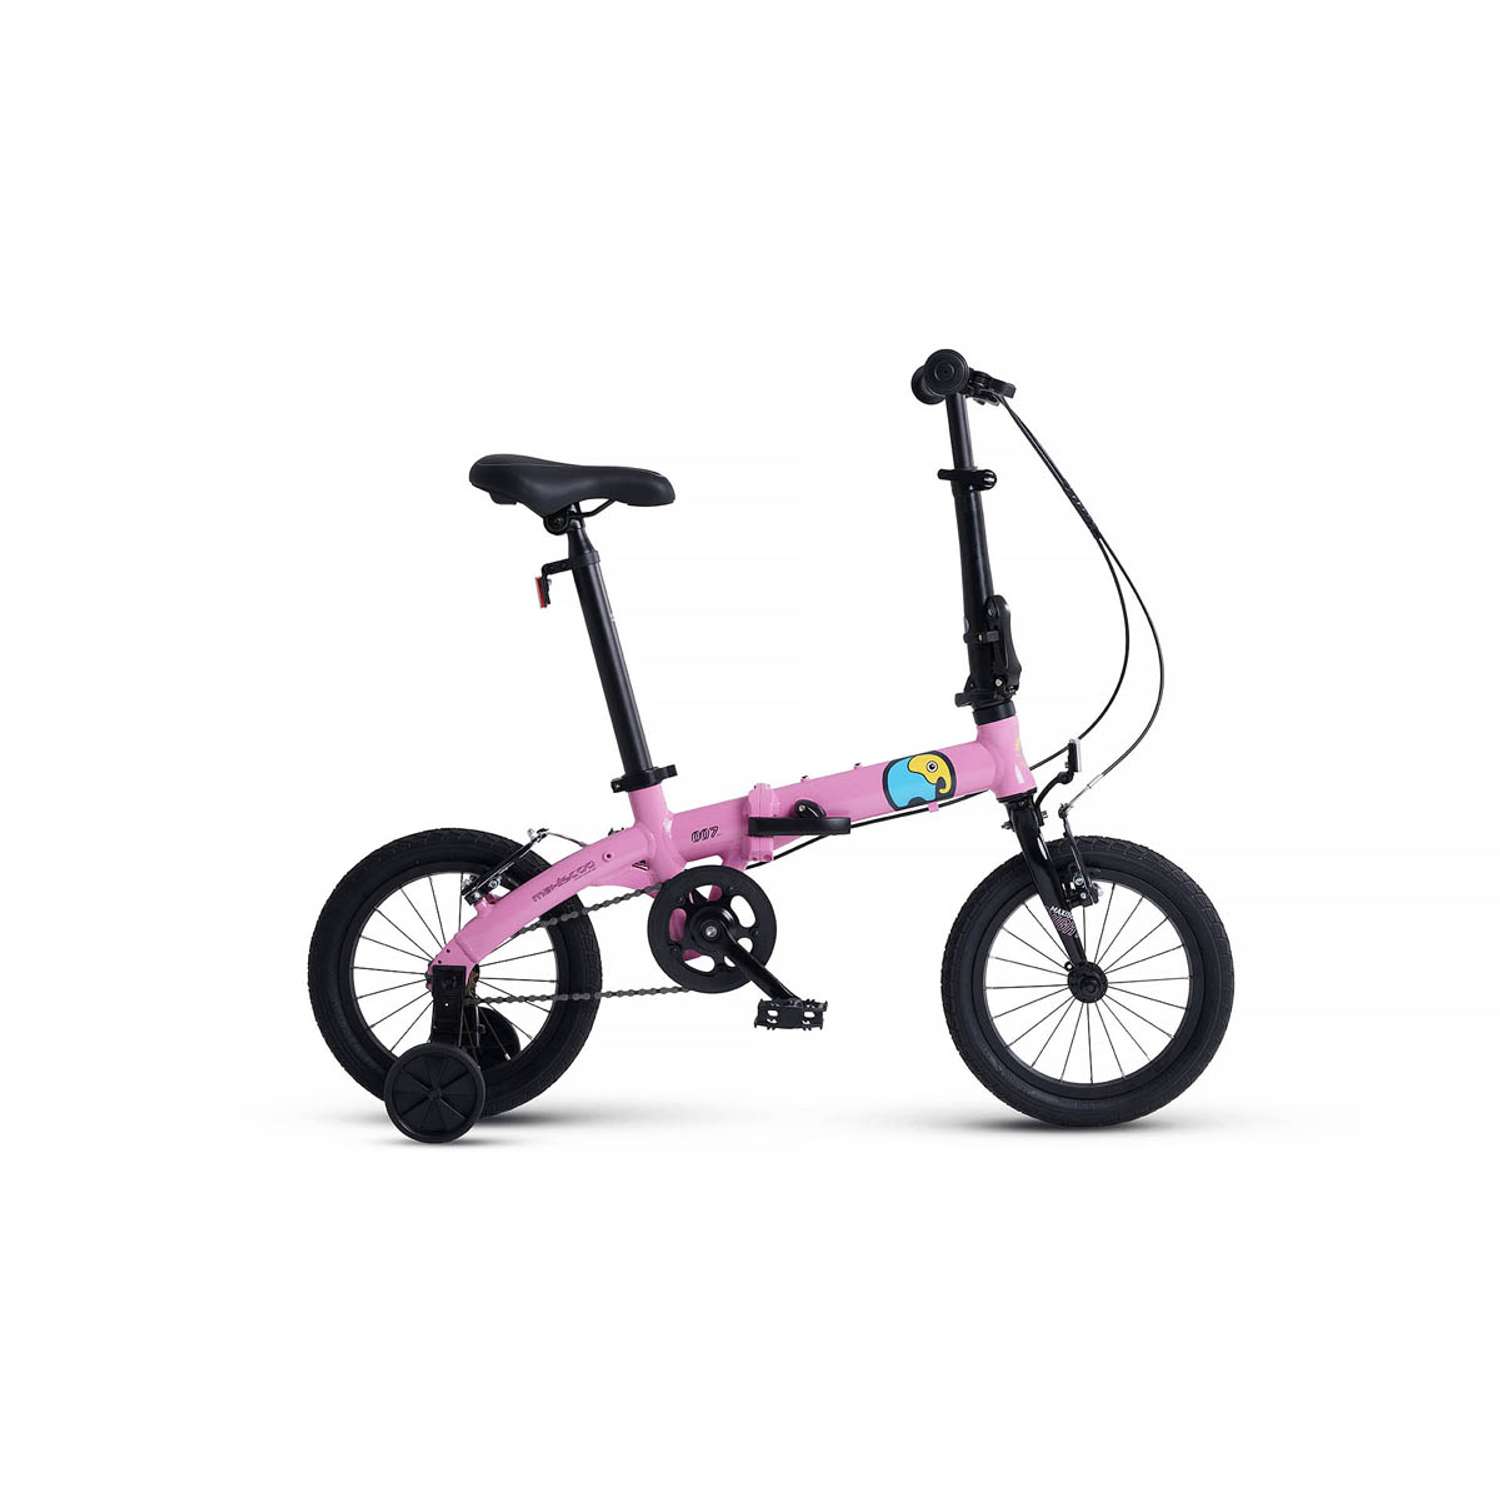 Велосипед Детский Складной Maxiscoo S007 стандарт 14 розовый - фото 1